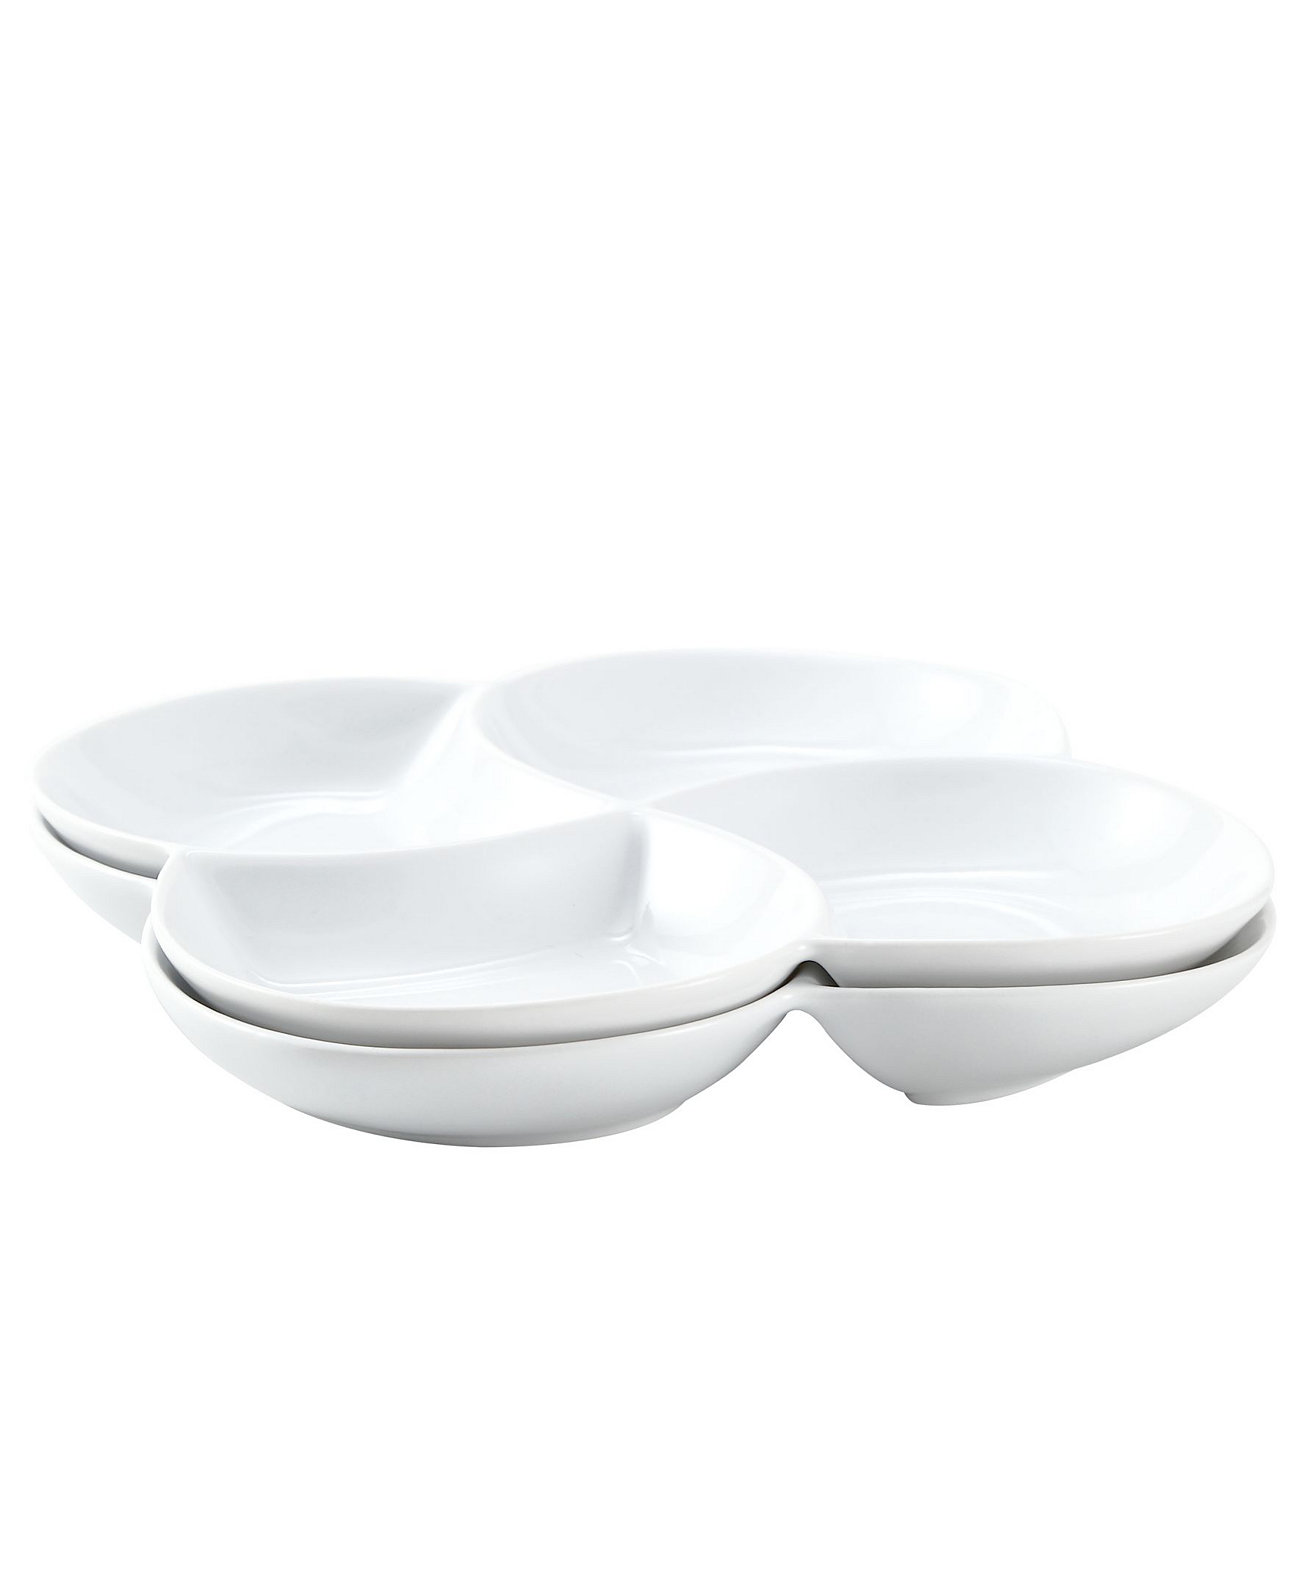 Поднос для сервировочных тарелок с 4 отделениями, сервировочные тарелки для десертов, 2 шт. Bruntmor